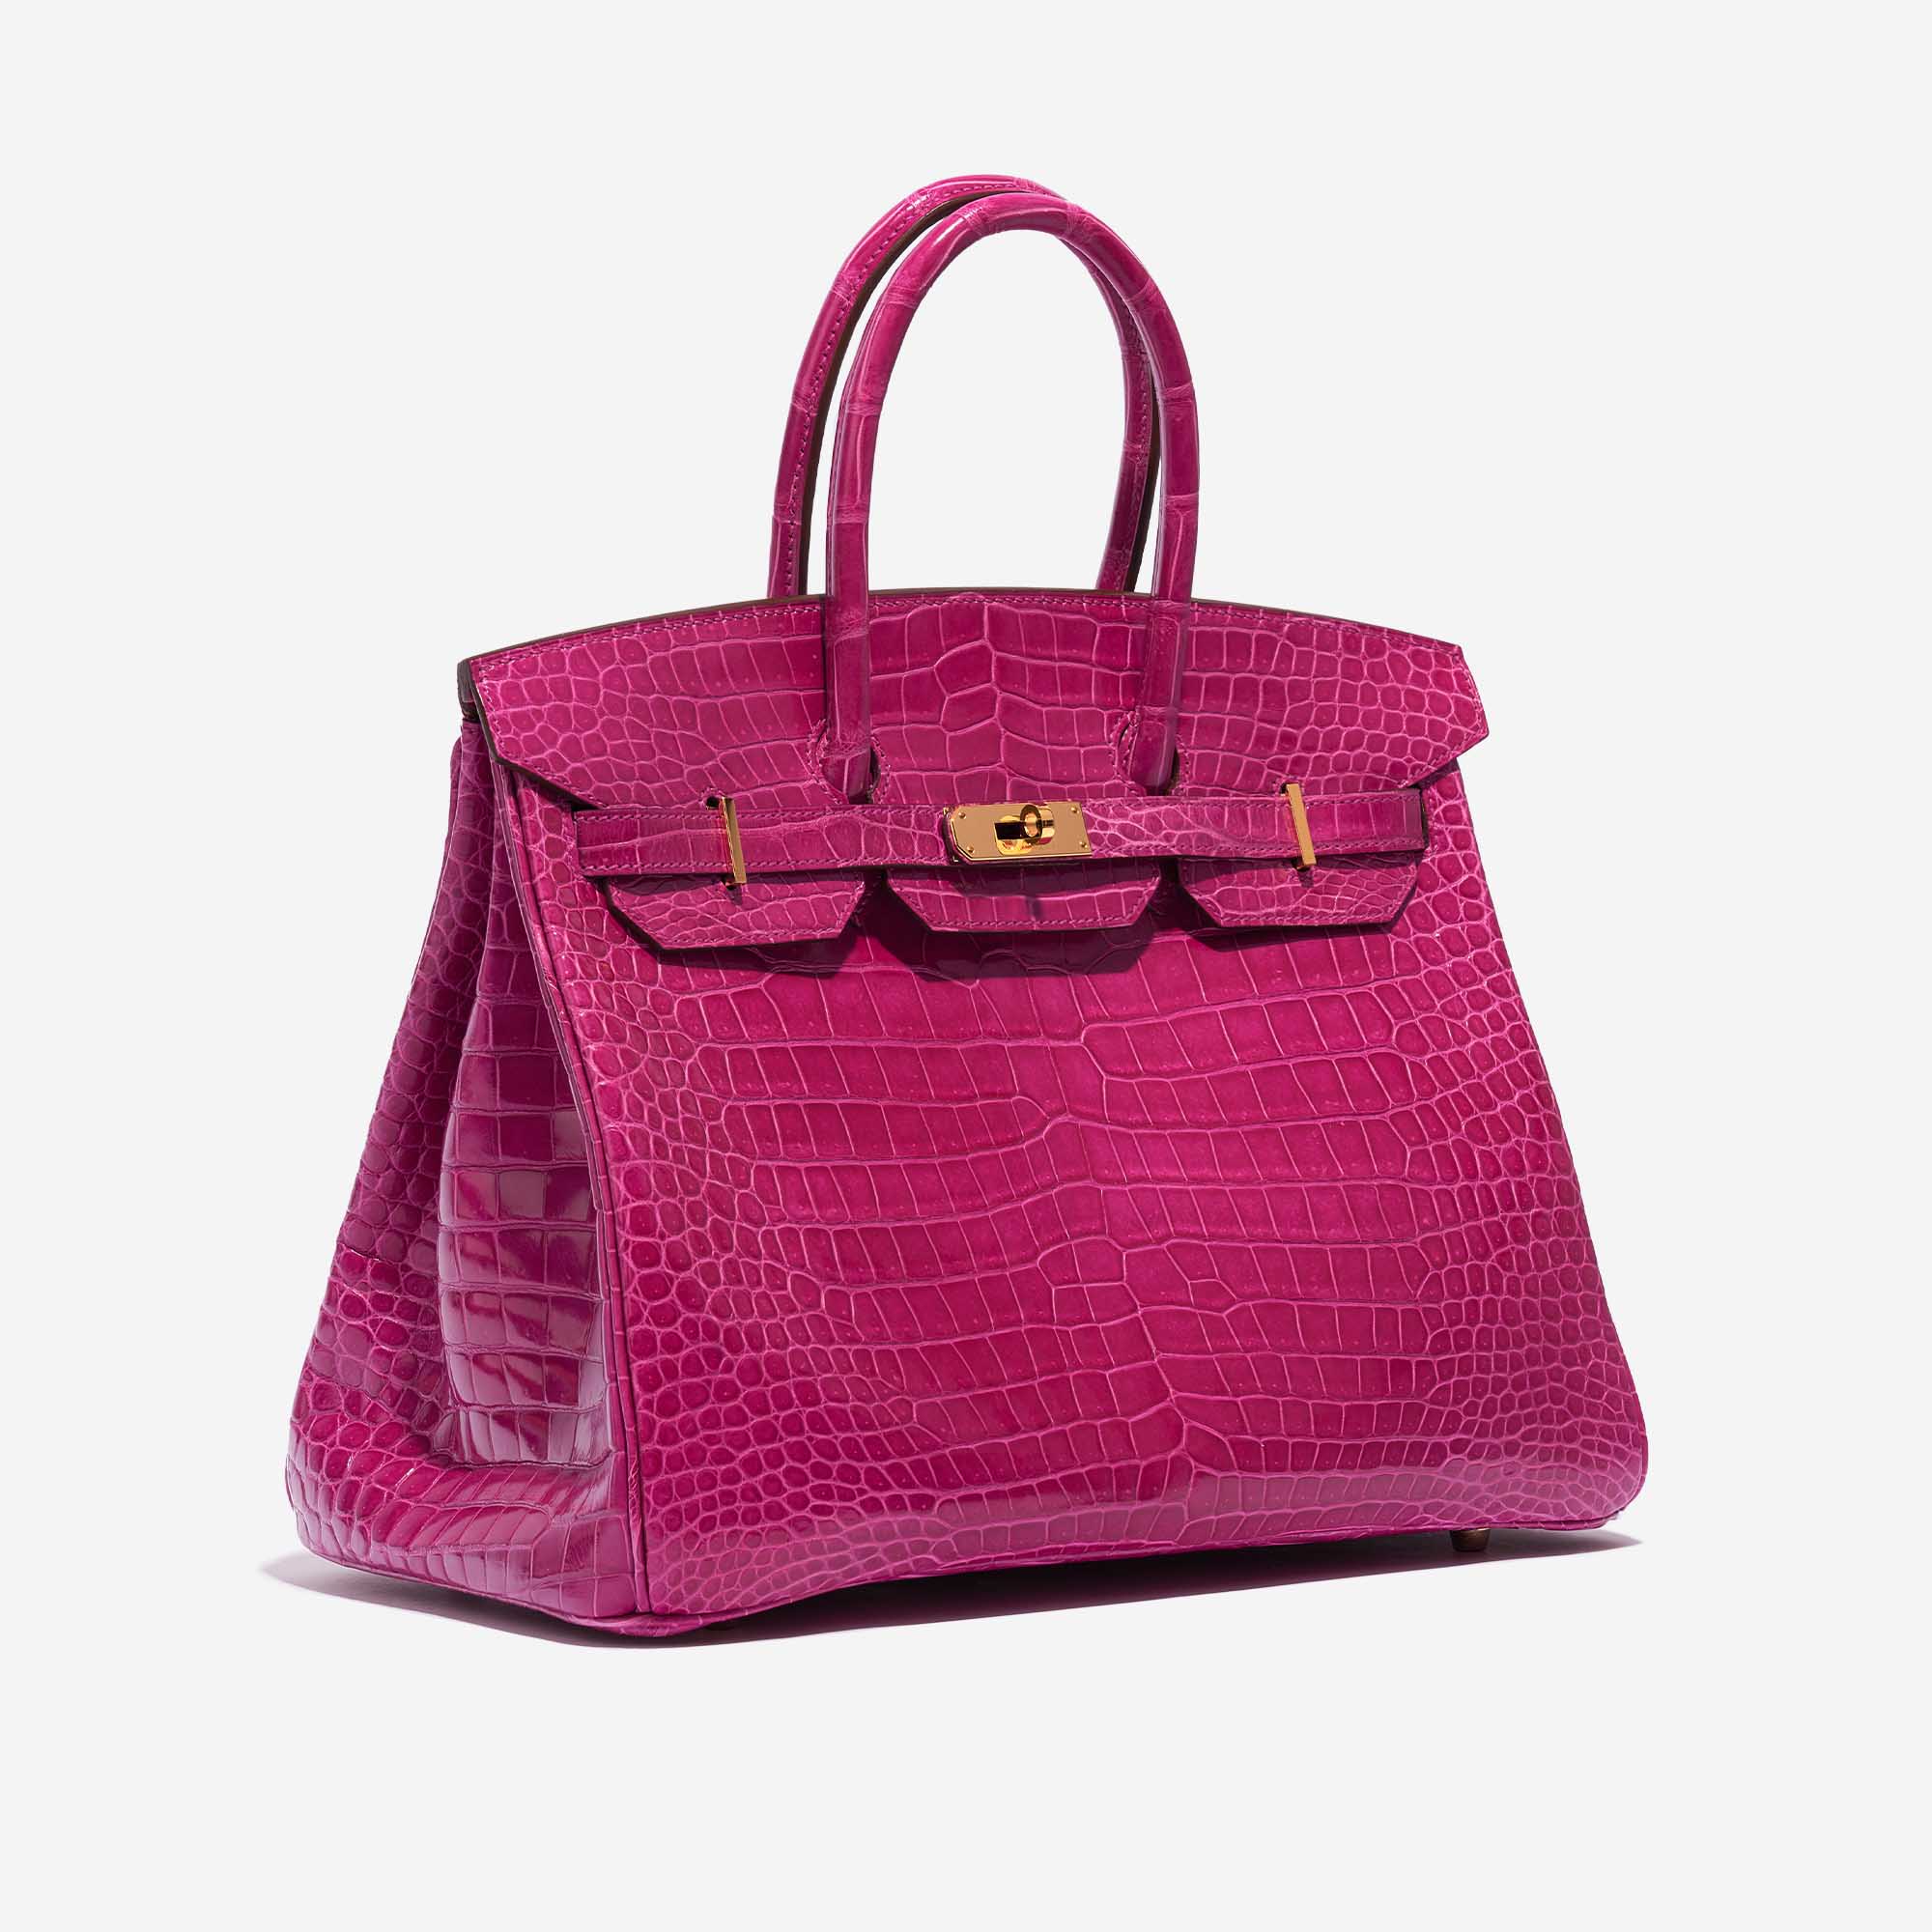 Sac Hermès Birkin 35 Porosus Crocodile Rose Scheherazade Pink Side Front | Vendez votre sac de créateur sur Saclab.com